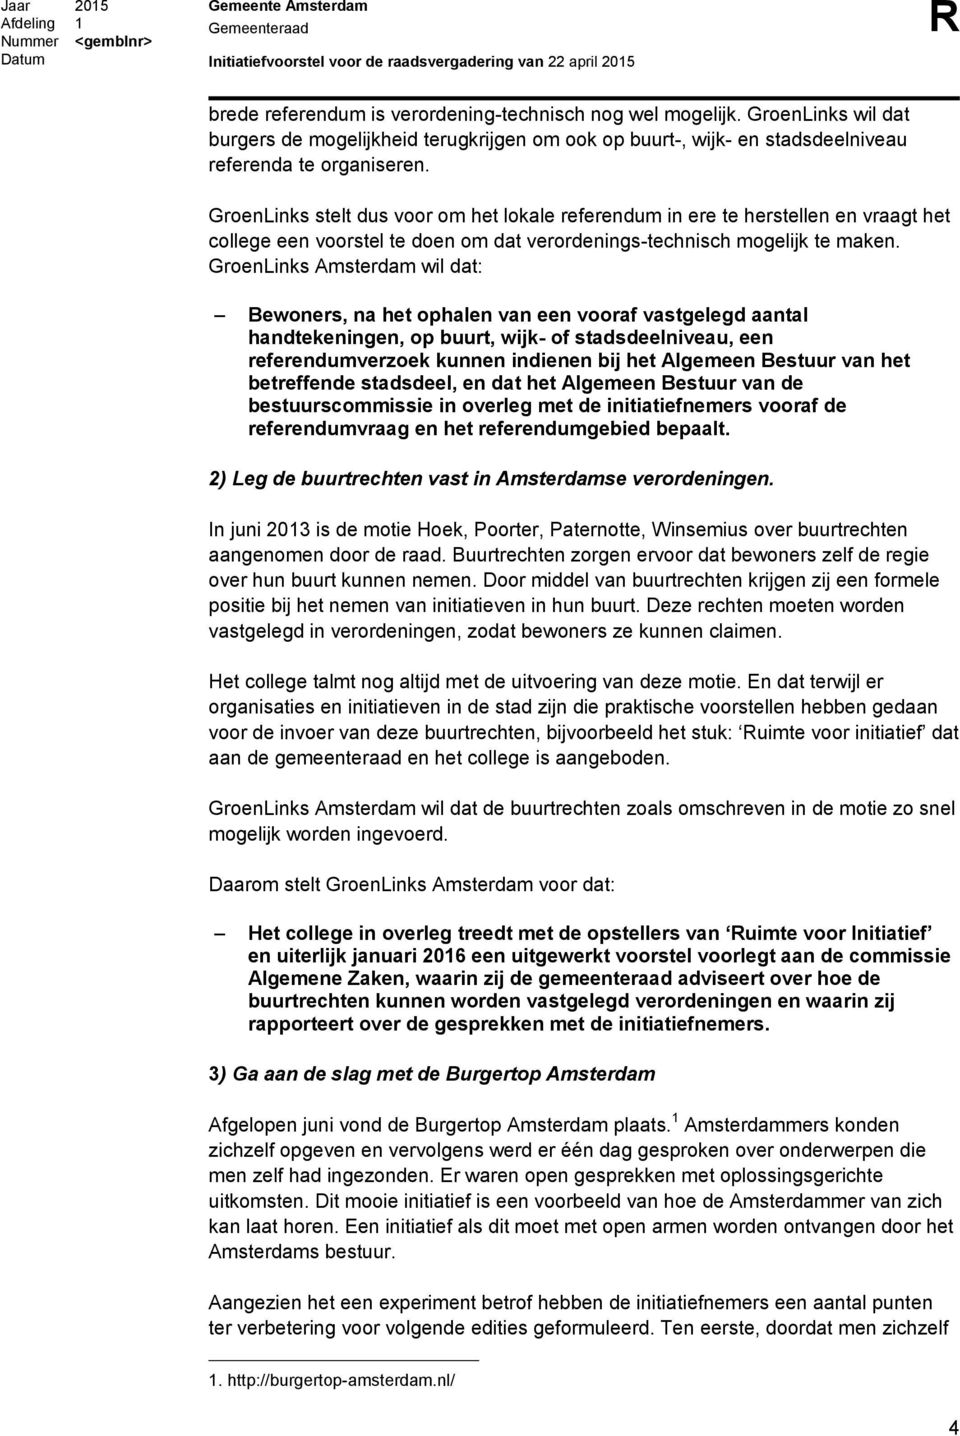 GroenLinks Amsterdam wil dat: Bewoners, na het ophalen van een vooraf vastgelegd aantal handtekeningen, op buurt, wijk- of stadsdeelniveau, een referendumverzoek kunnen indienen bij het Algemeen